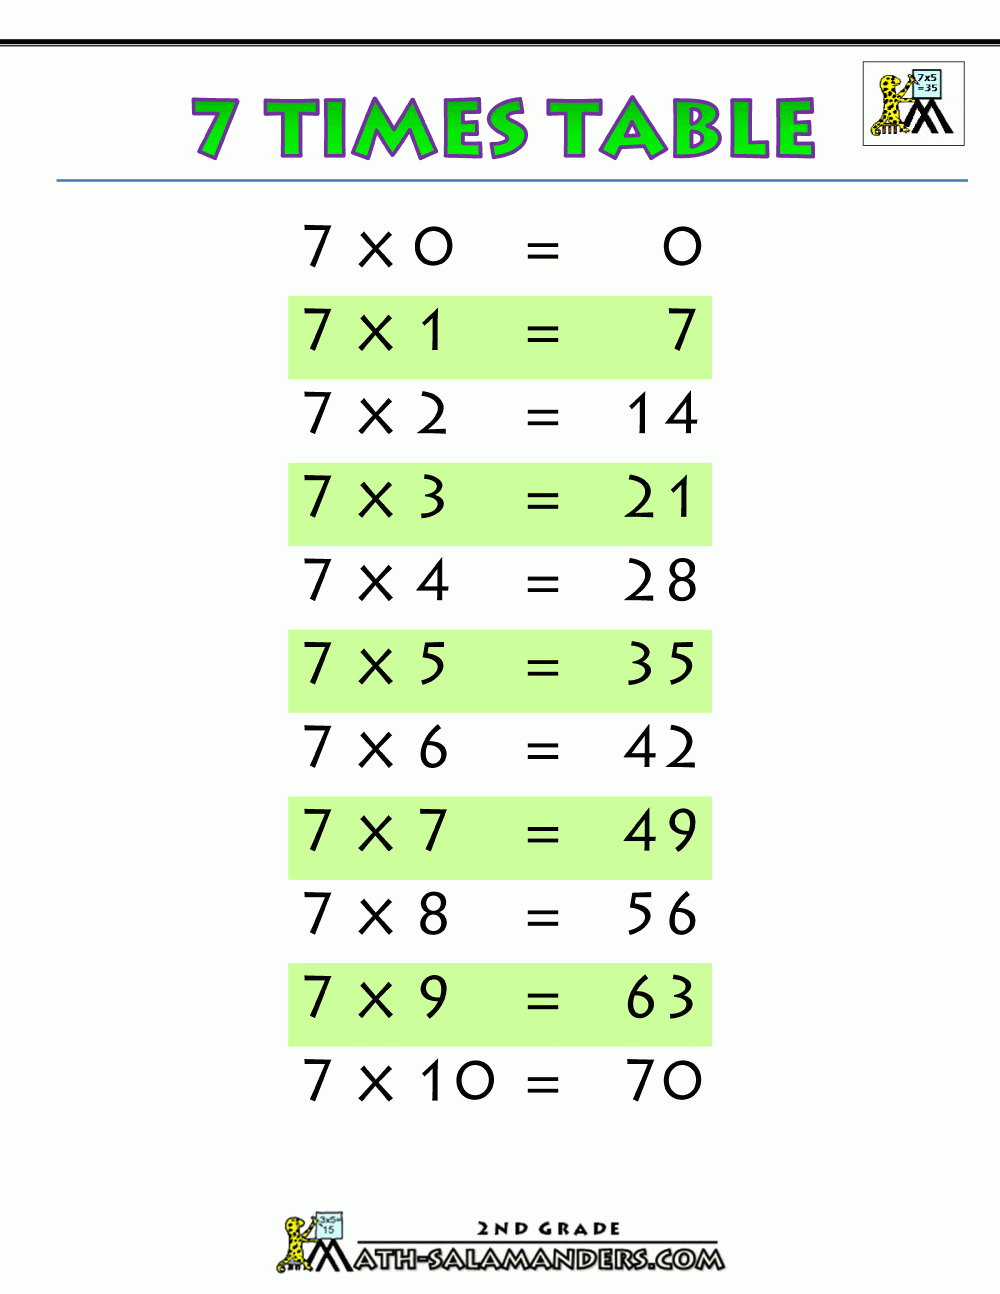 Multiplication-Charts-7-Times-Table-Printable.gif 1 000 × 1